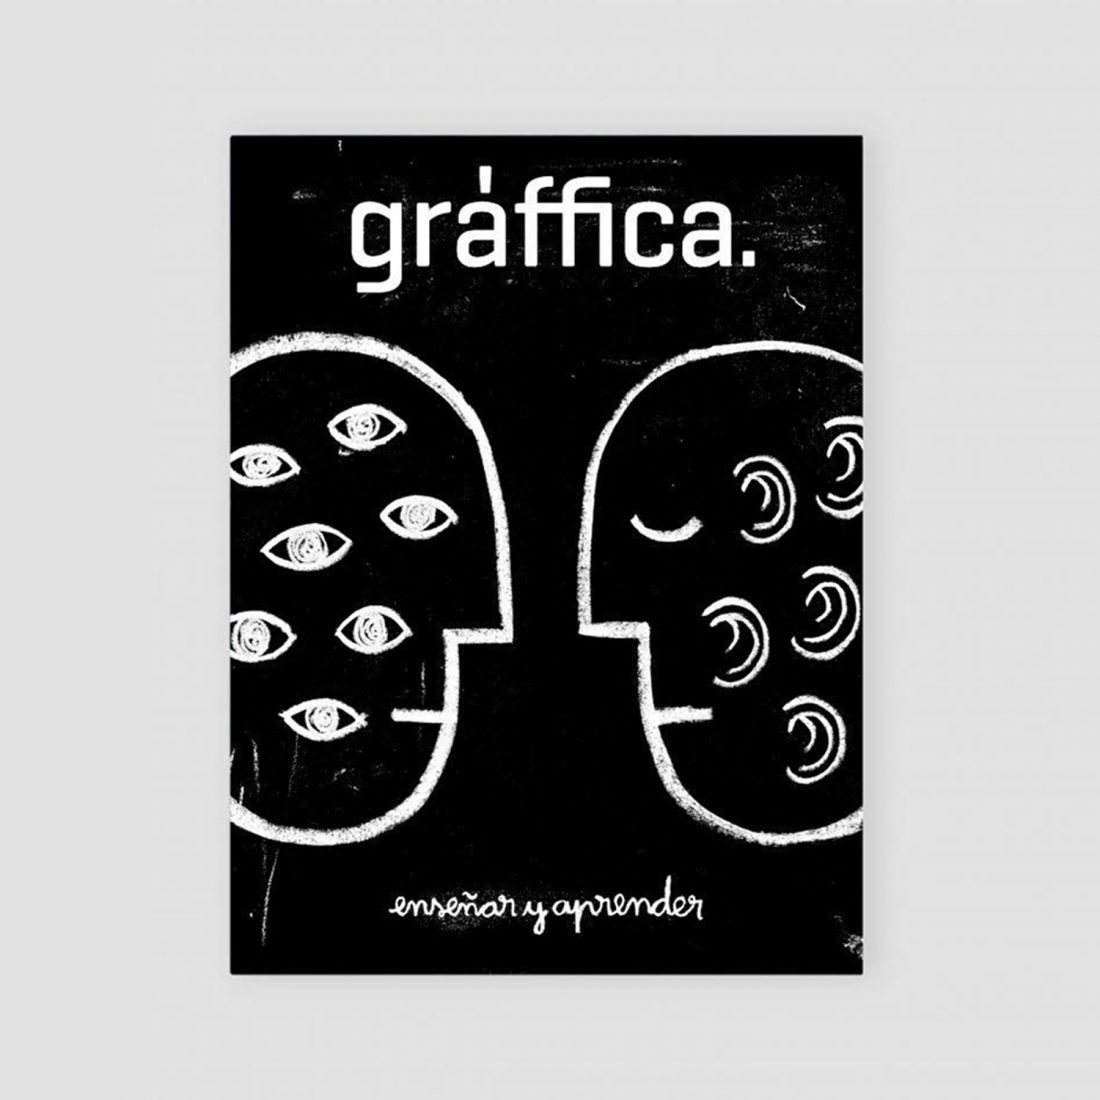 Diseño de la portada del número 22 de la revista Gràffica con el título 'Enseñar y aprender'.